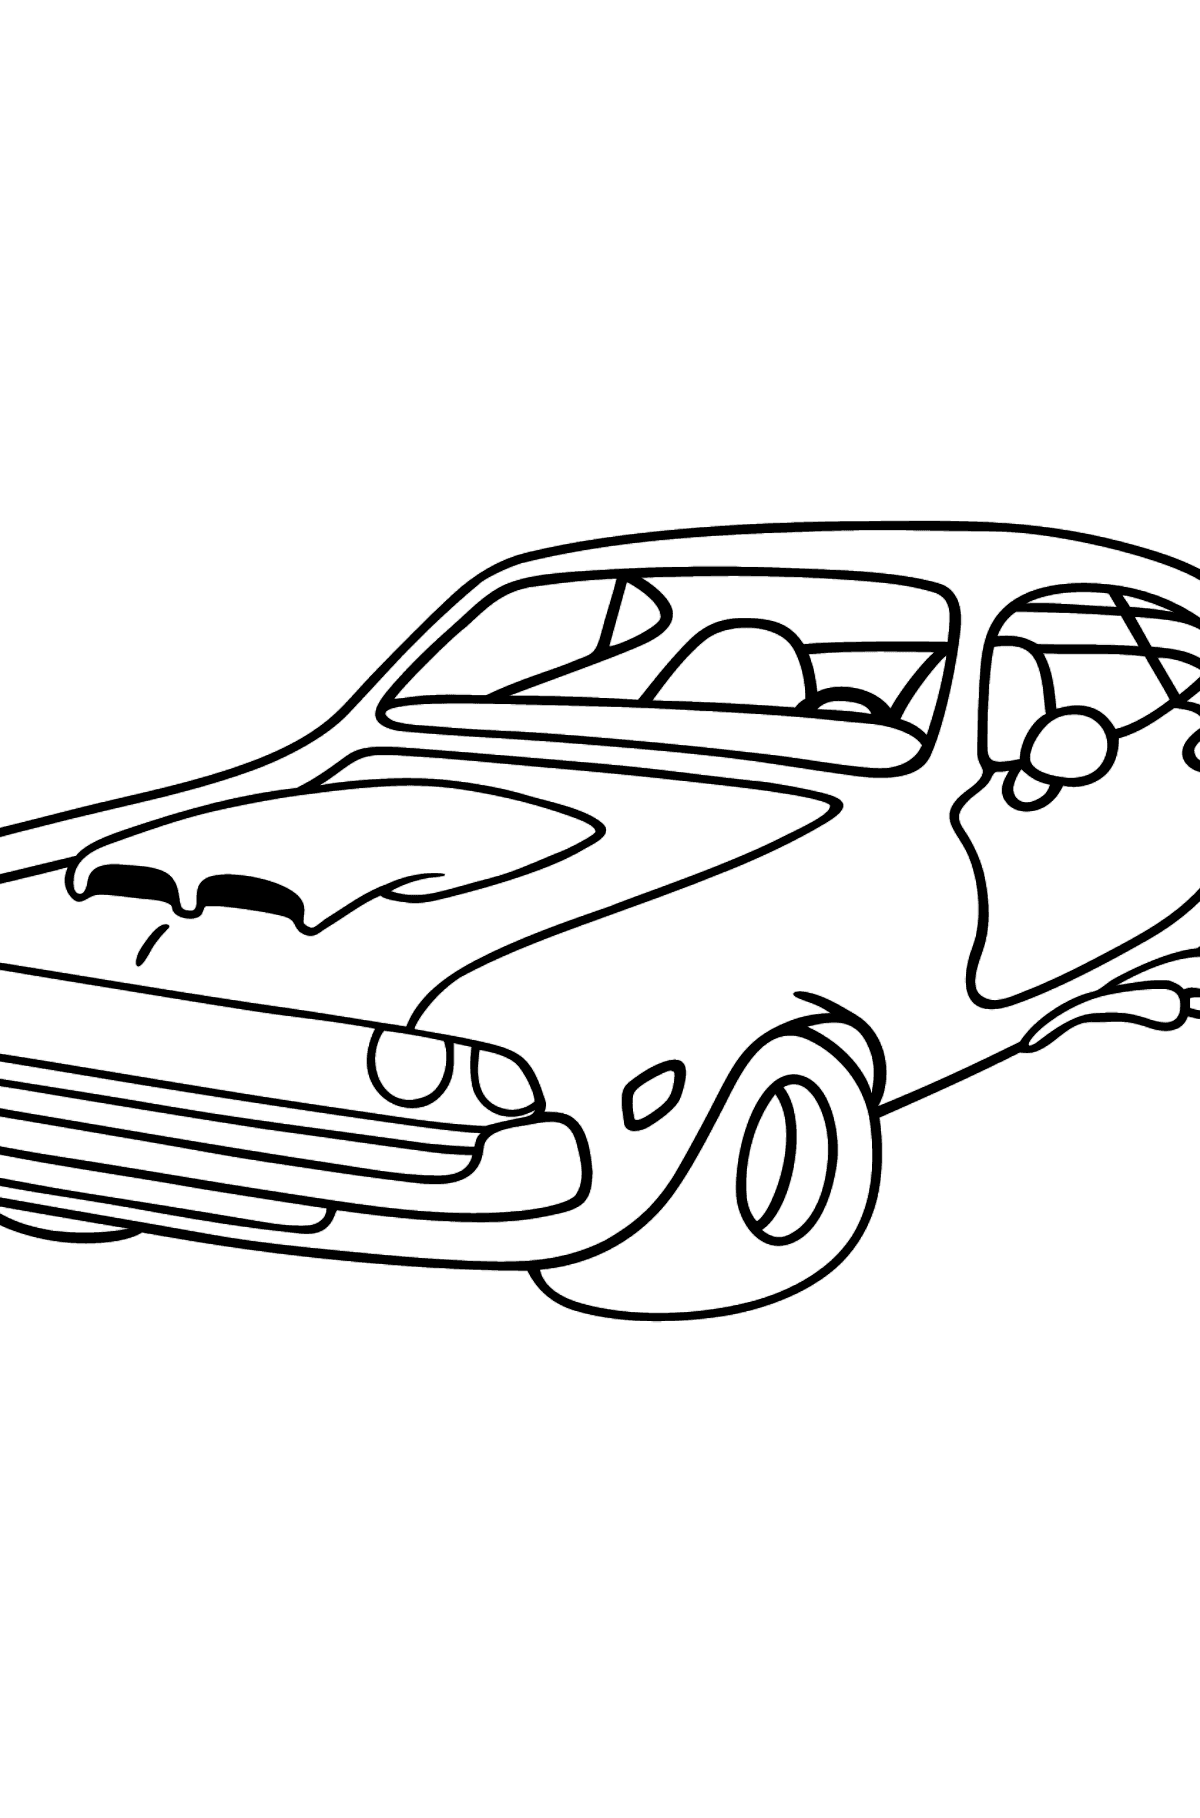 Tegning til farvning chevrolet bil - Tegninger til farvelægning for børn